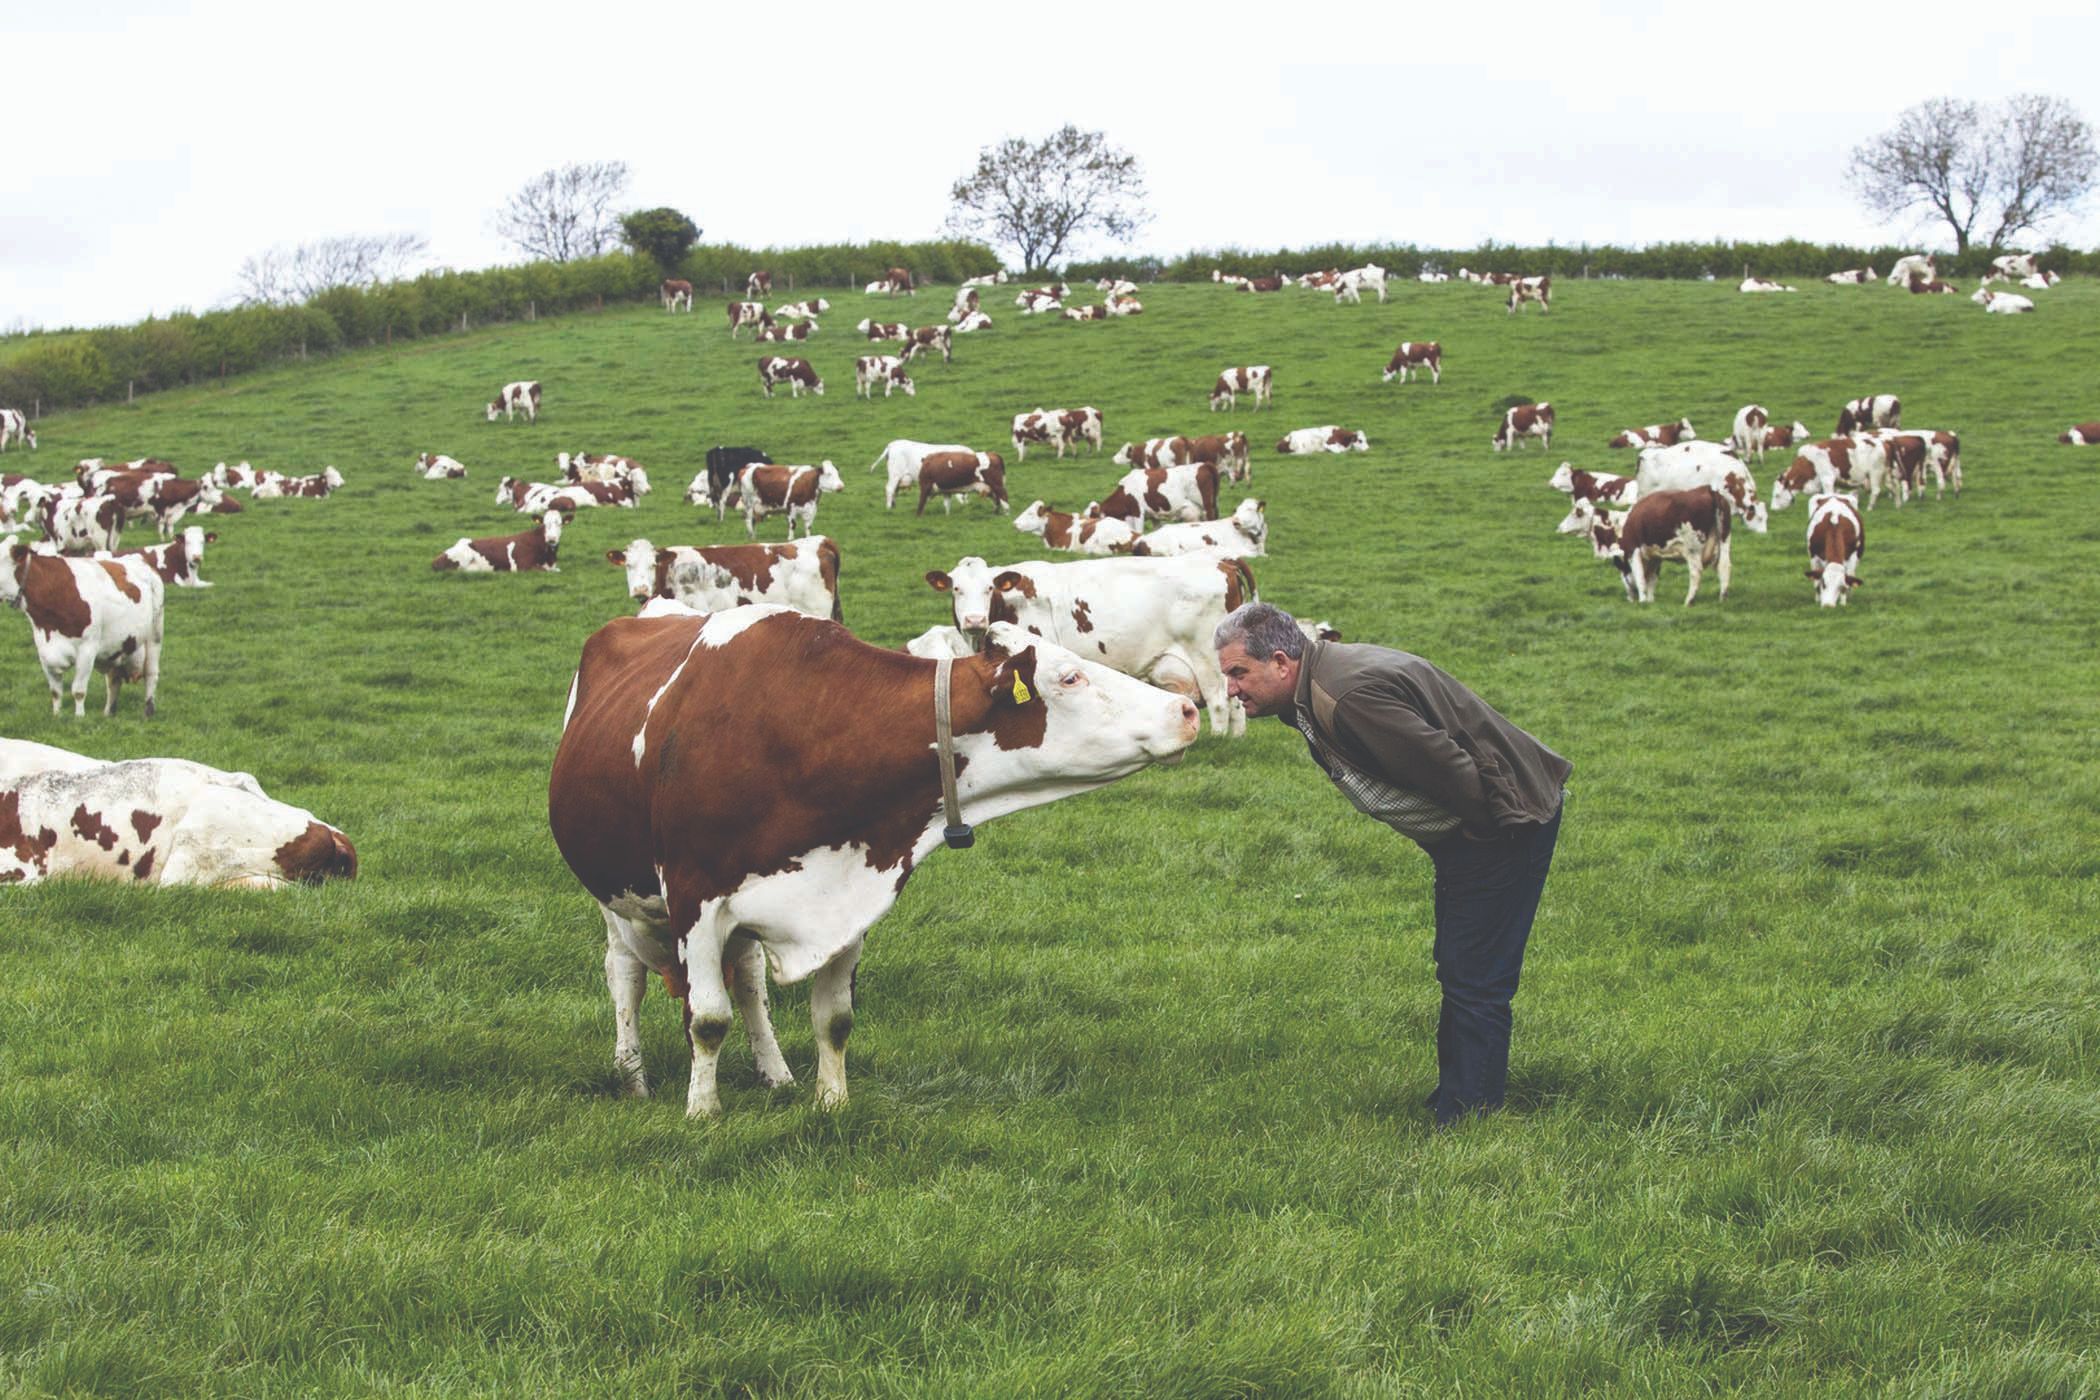 Prednosti slobodnog načina držanja goveda